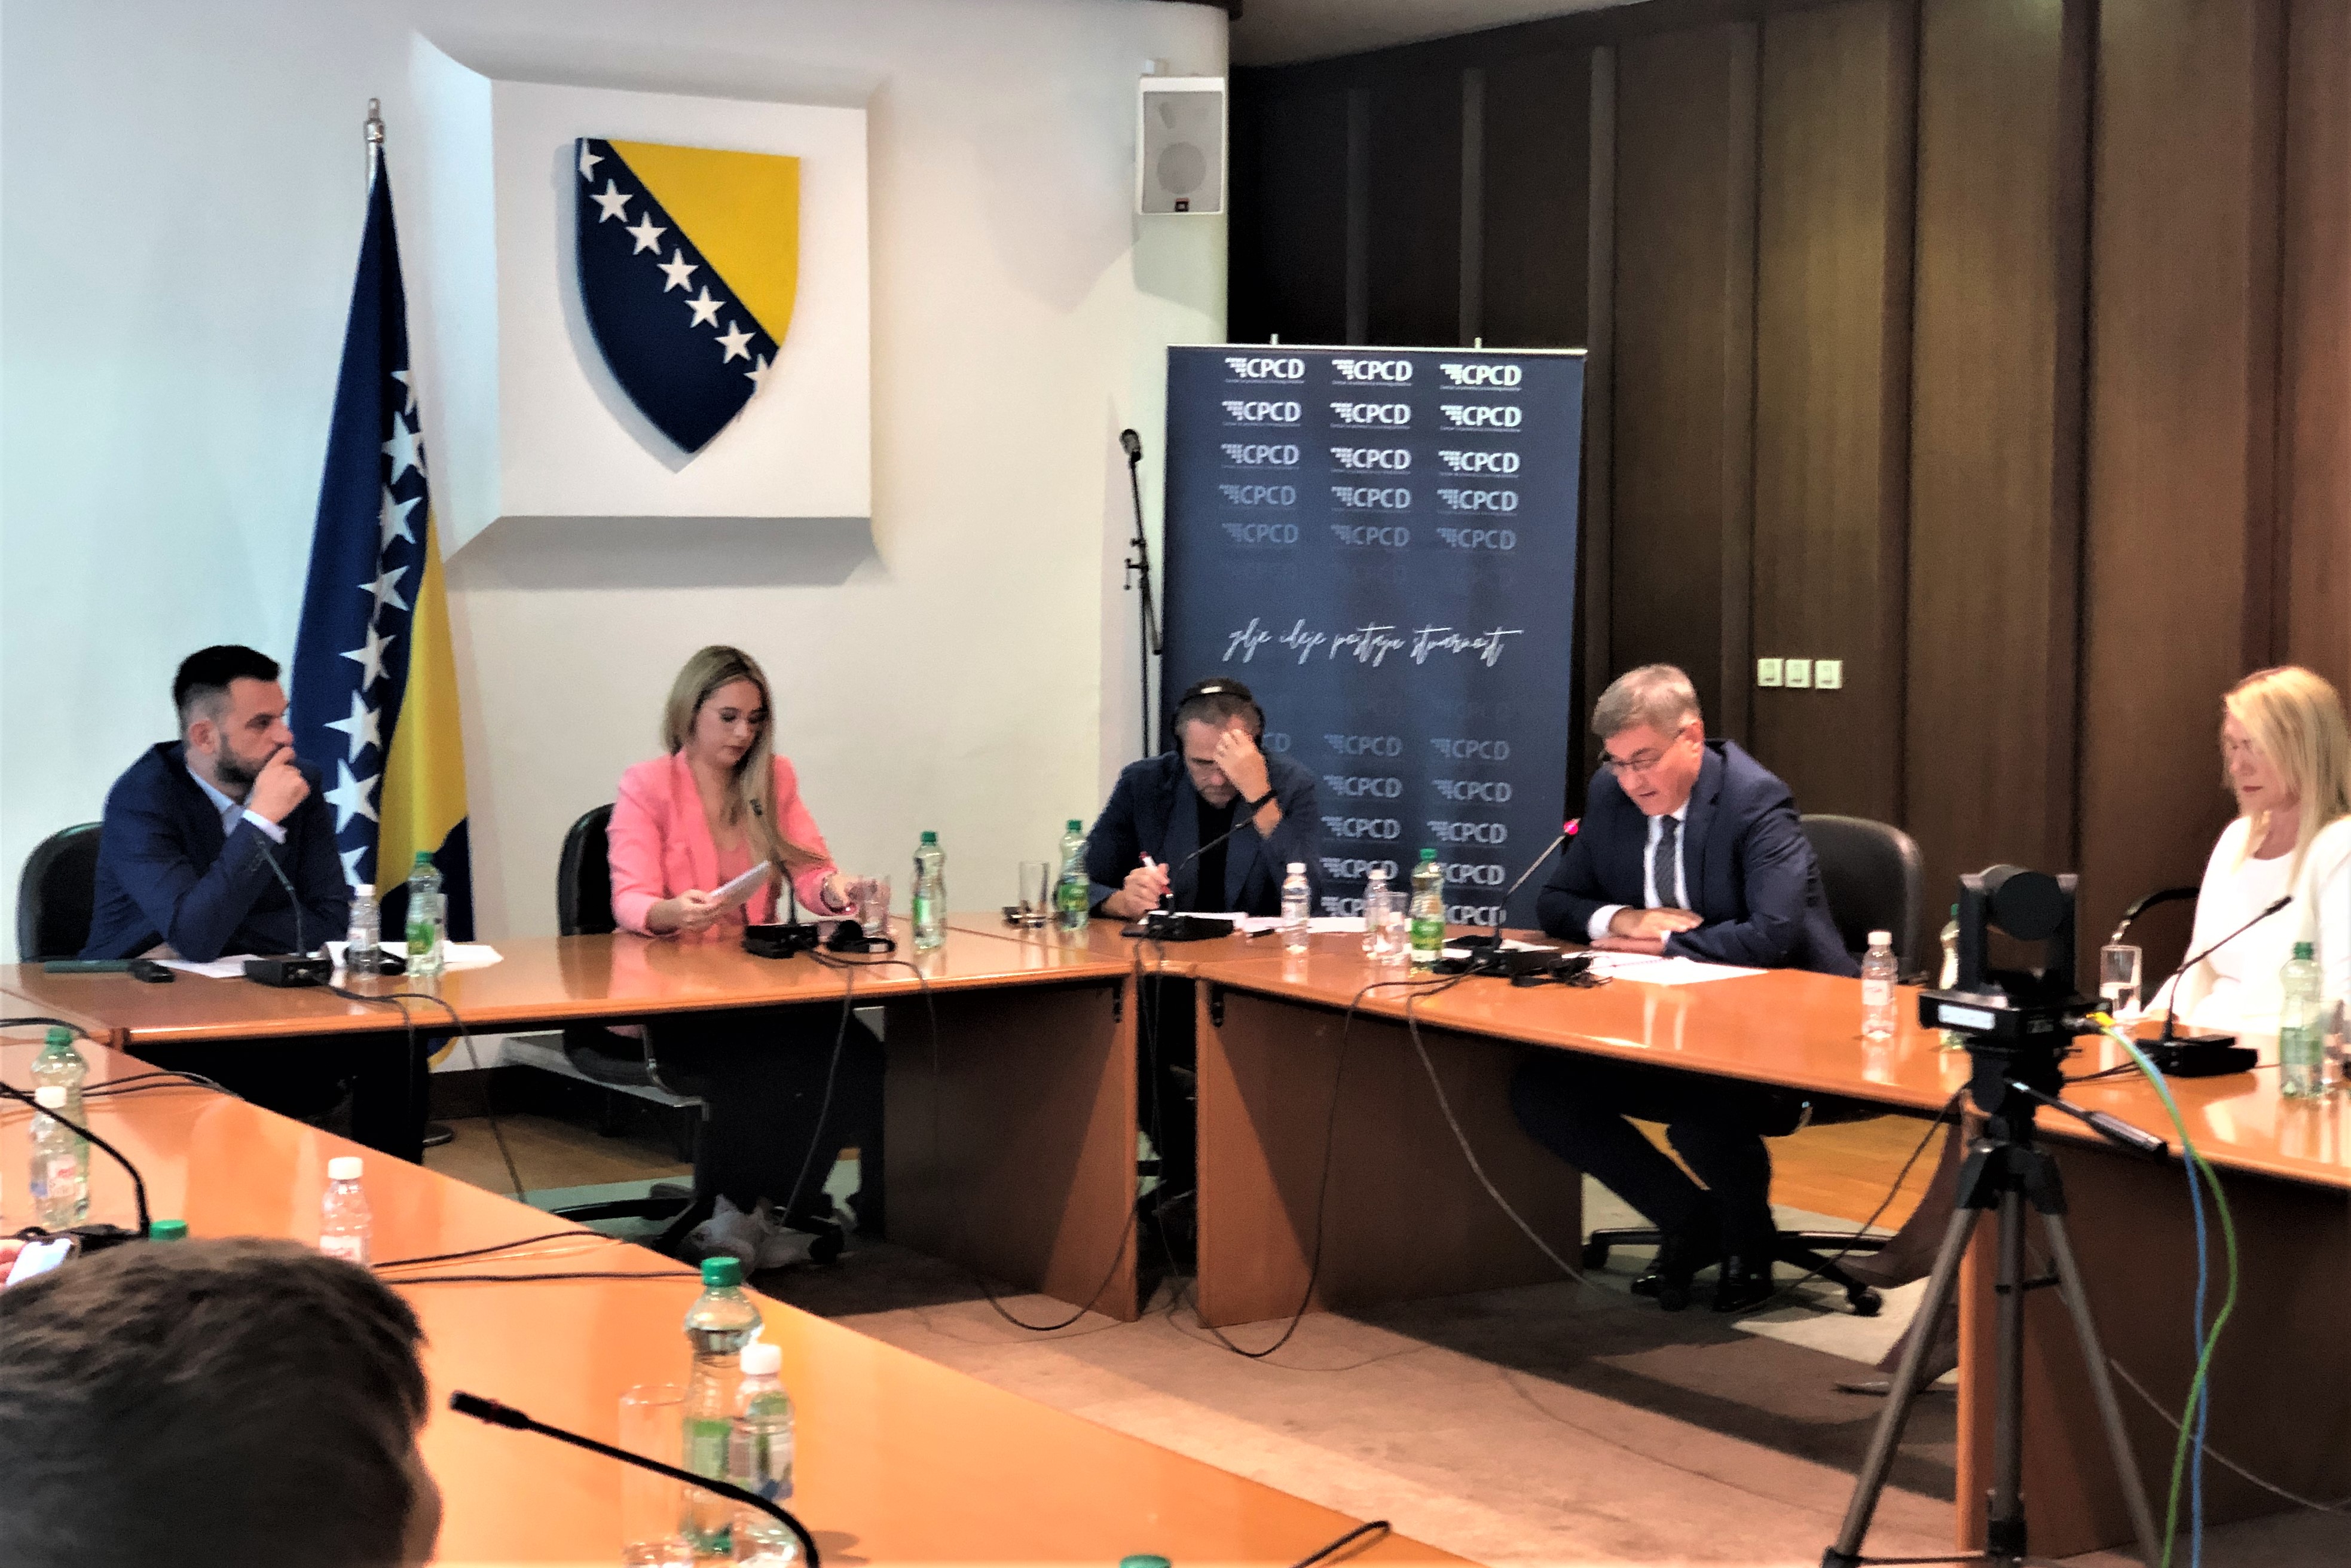 Zamjenik predsjedatelja Zastupničkog doma PSBiH dr. Denis Zvizdić obratio se sudionicima konferencije o Berlinskom procesu pod nazivom “Tri sporazuma o mobilnosti godinu dana nakon potpisivanja”